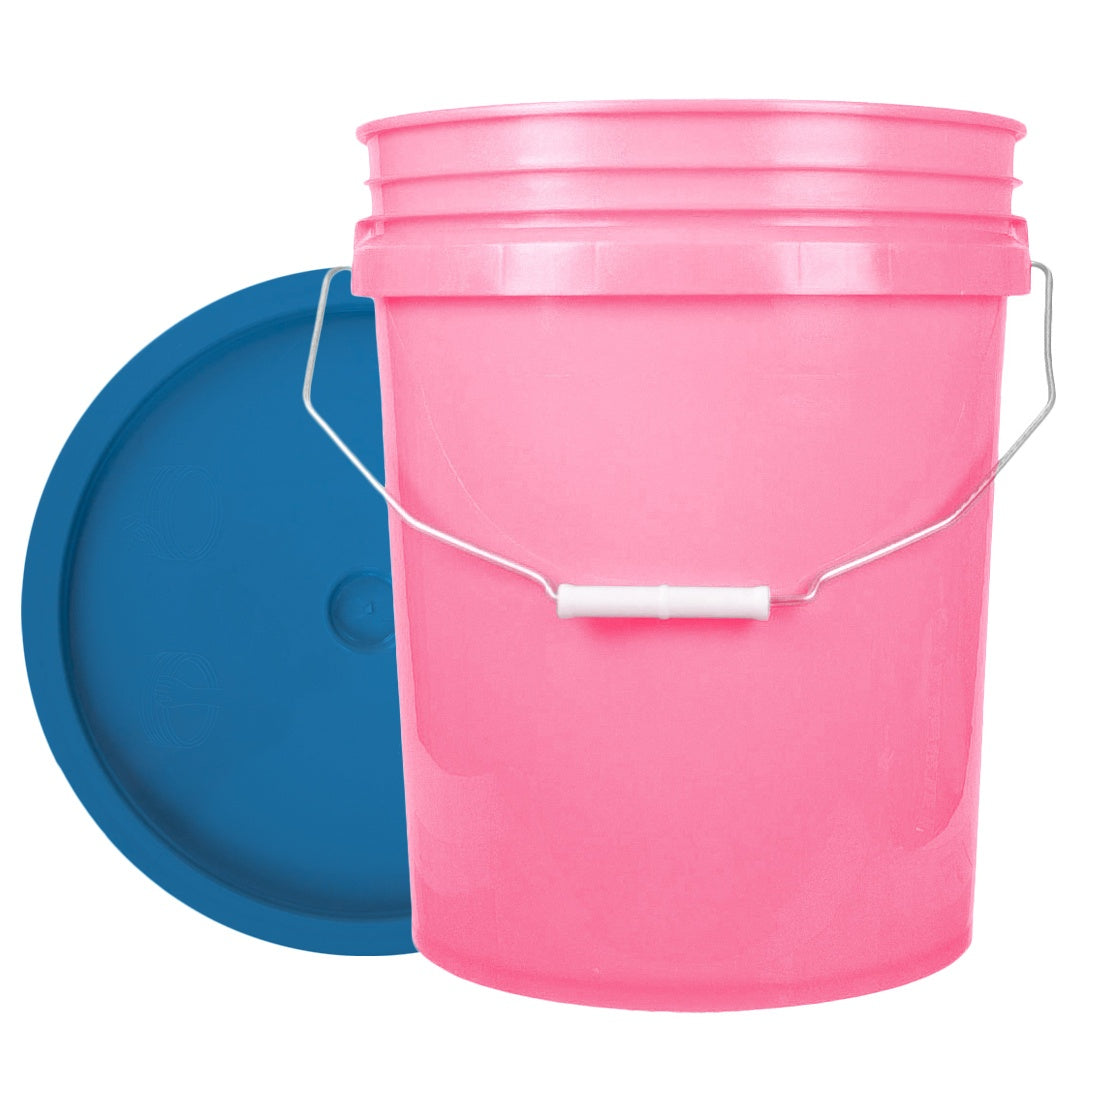 XERO Round Bucket Set Pink and Chevron Full View